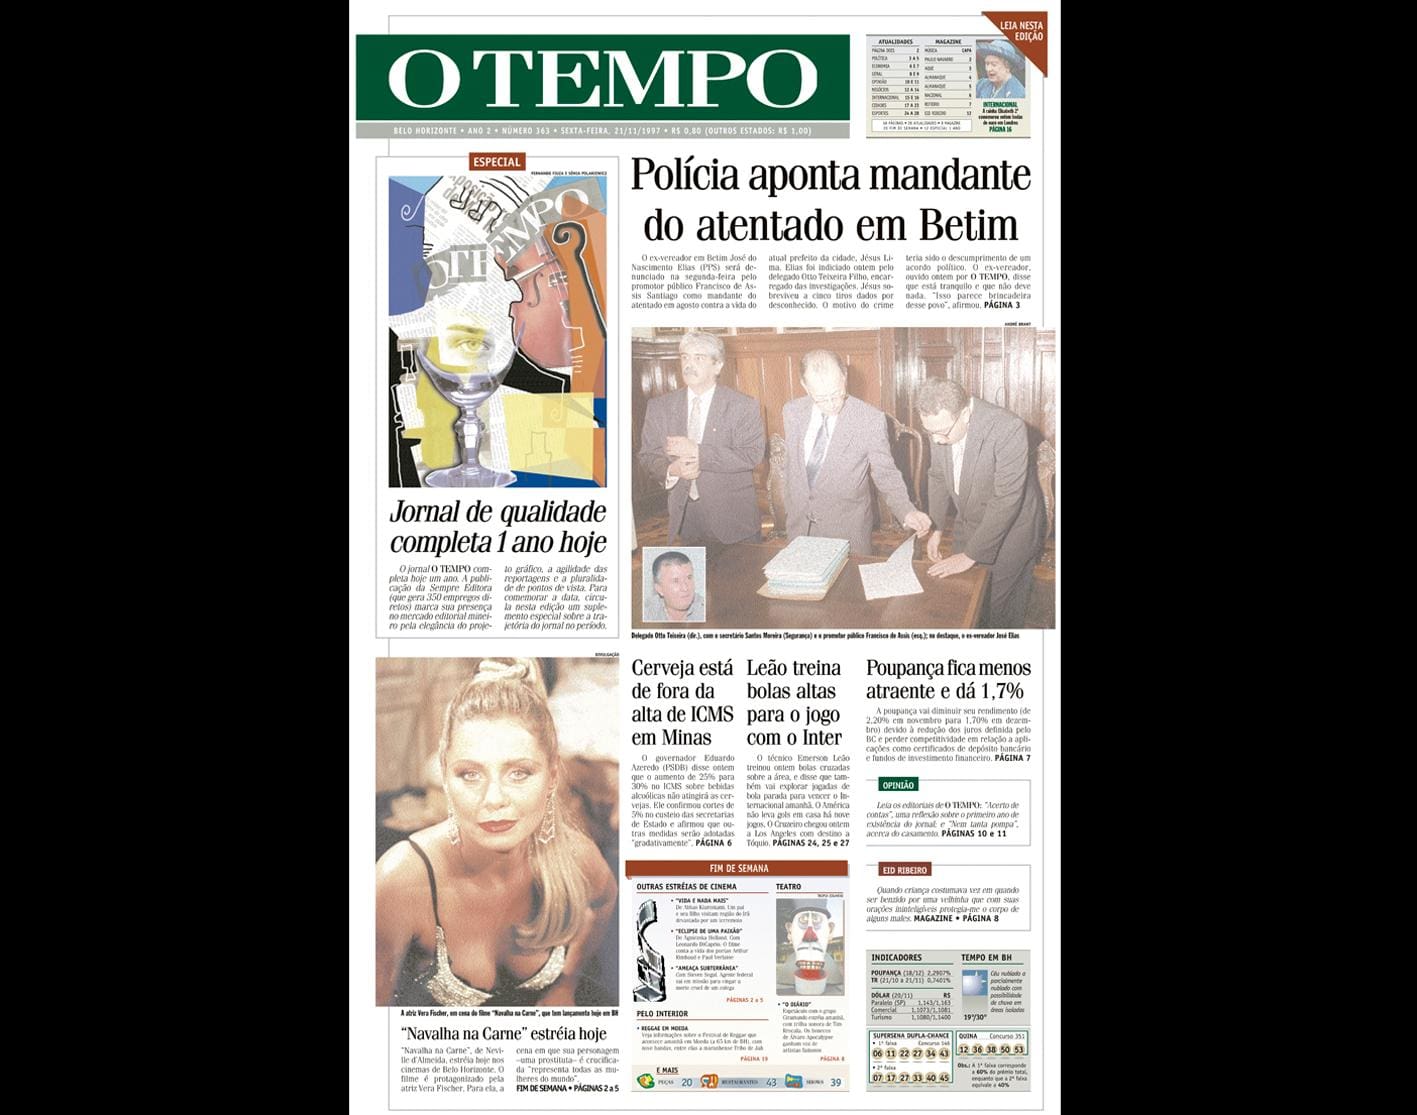 Capa do jornal O TEMPO no dia 21.11.1997; resgate do acervo marca as comemorações dos 25 anos da publicação